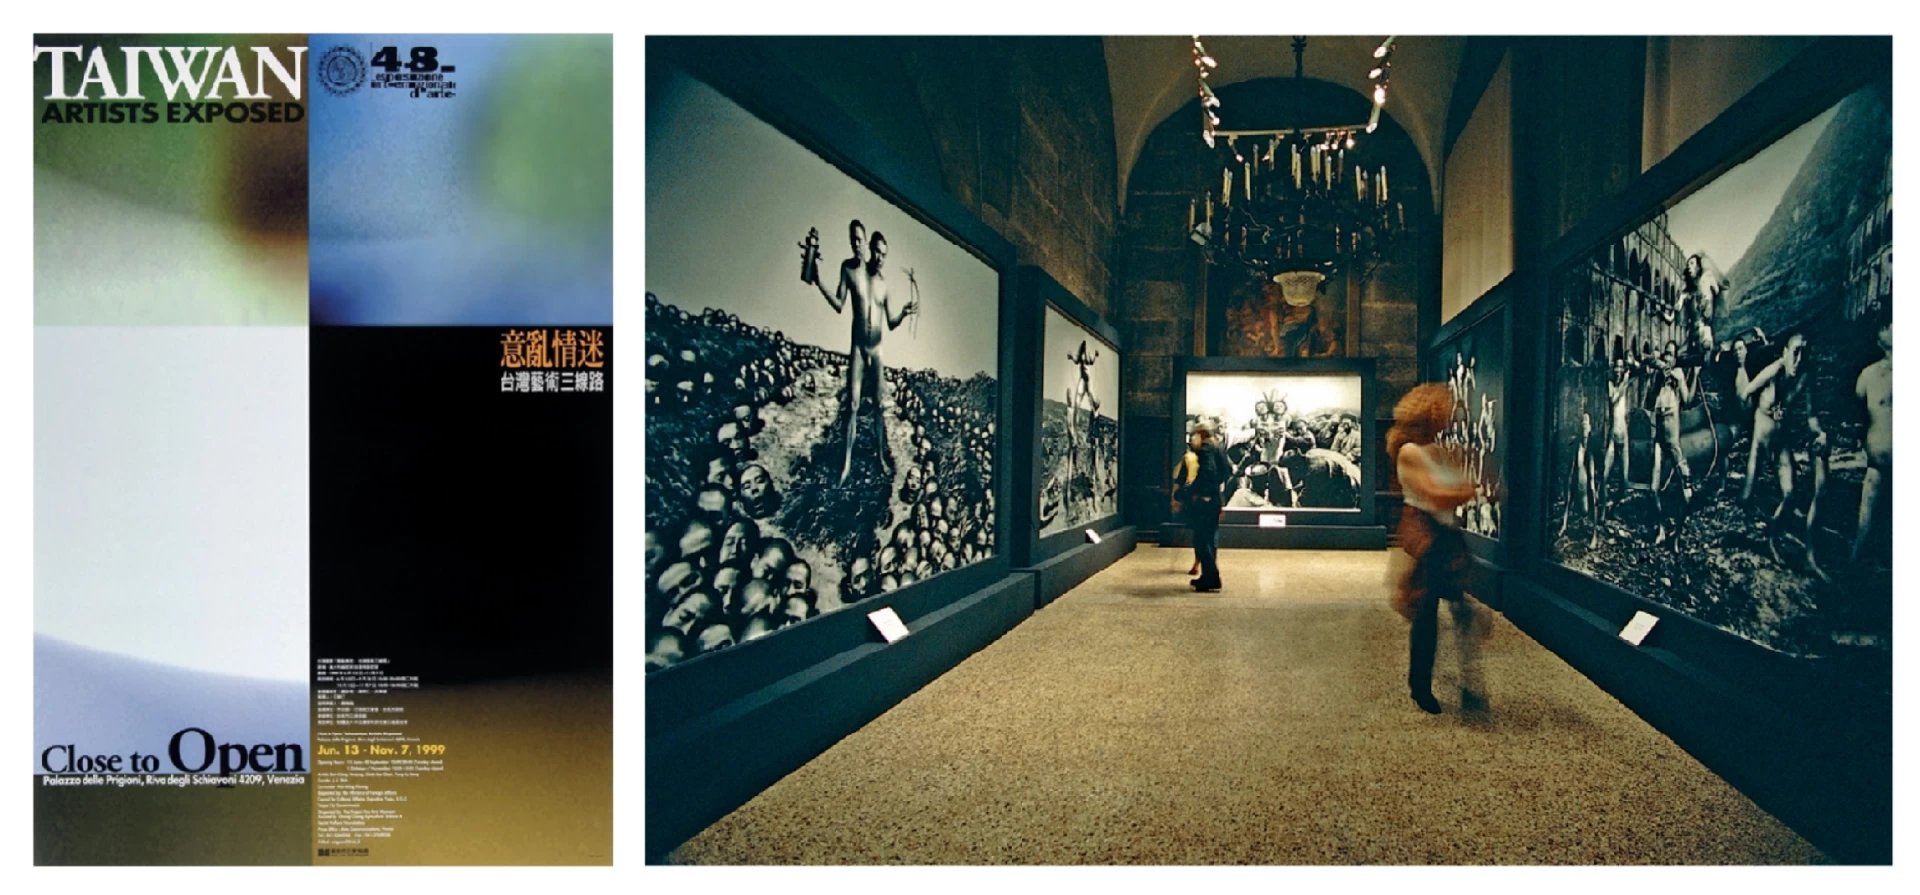 第48屆威尼斯雙年展台灣館「意亂情迷：台灣藝術三線路」海報及展場一景，陳界仁作品左起《連體魂》、《恍惚相》、《本生圖》、《瘋癲城》、《哪吒相》，1999.06-圖片